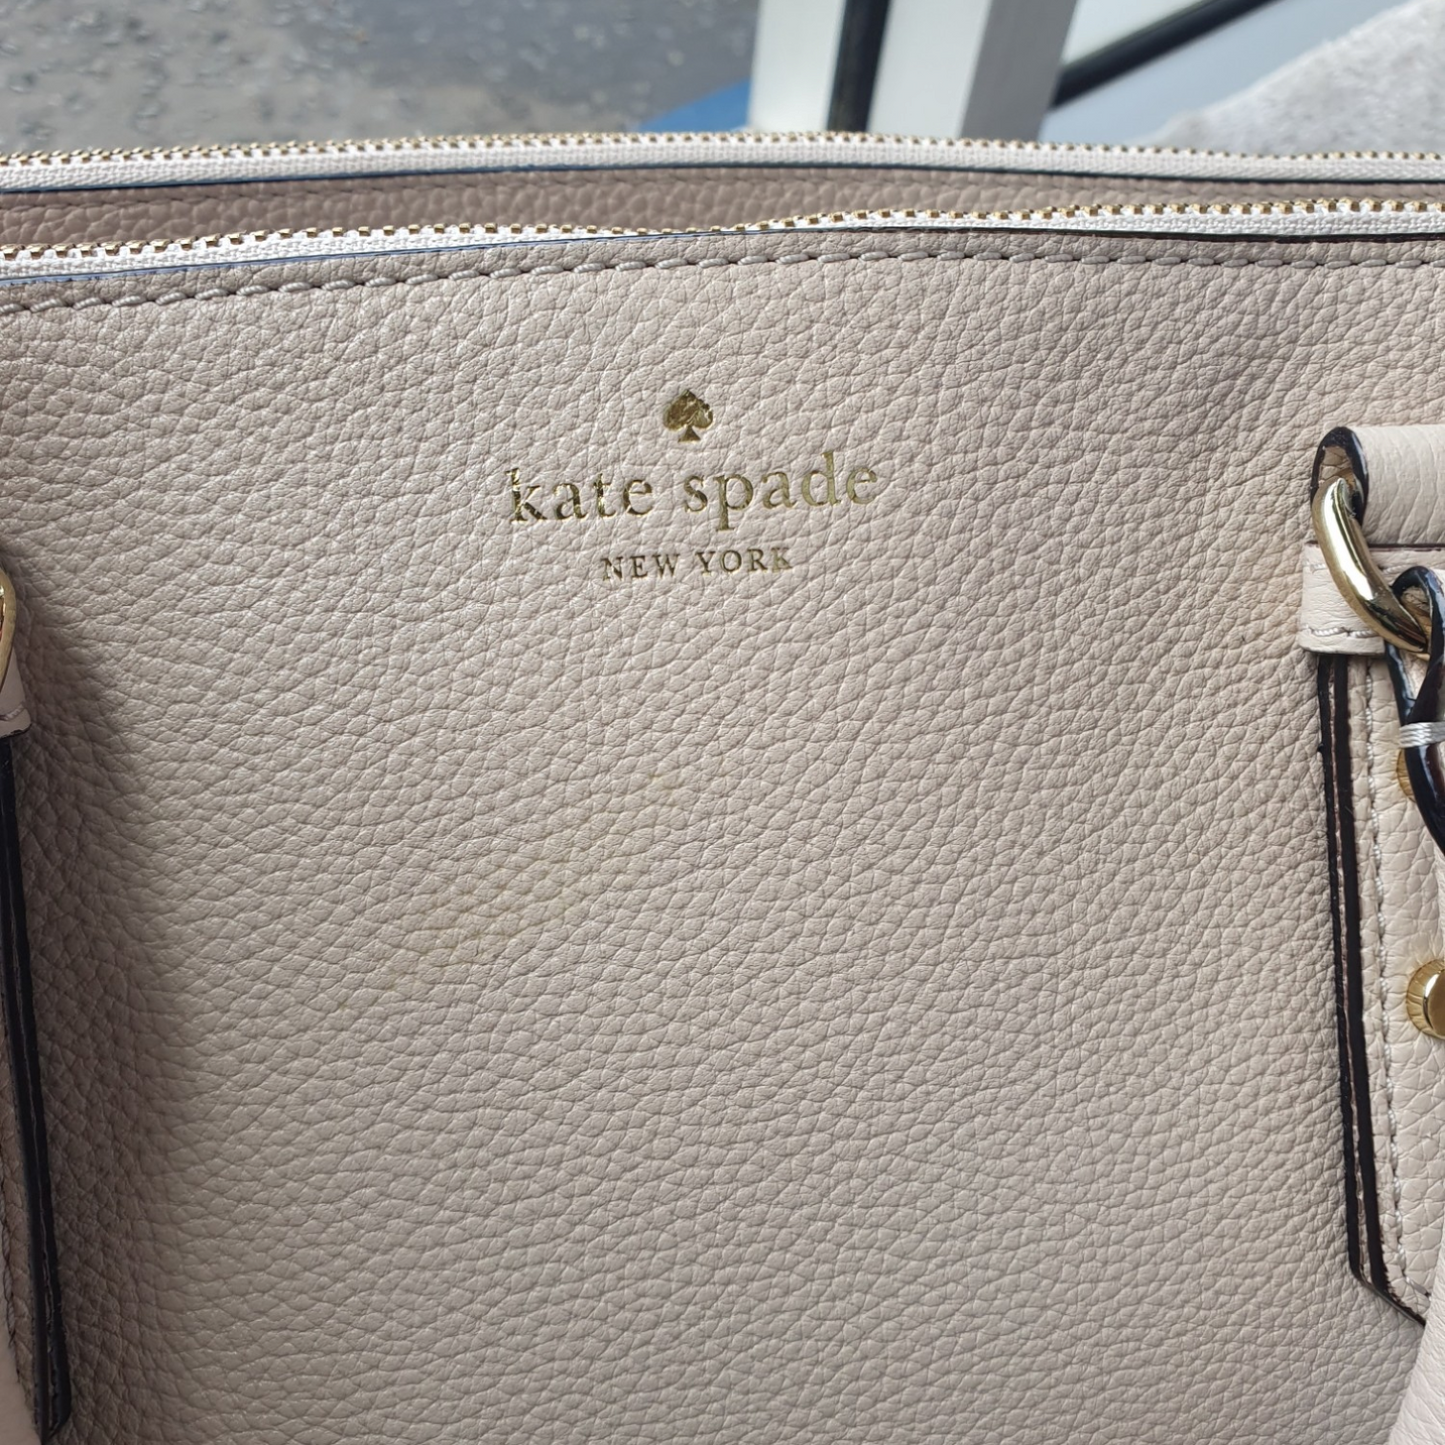 Kate Spade Cream leather bag